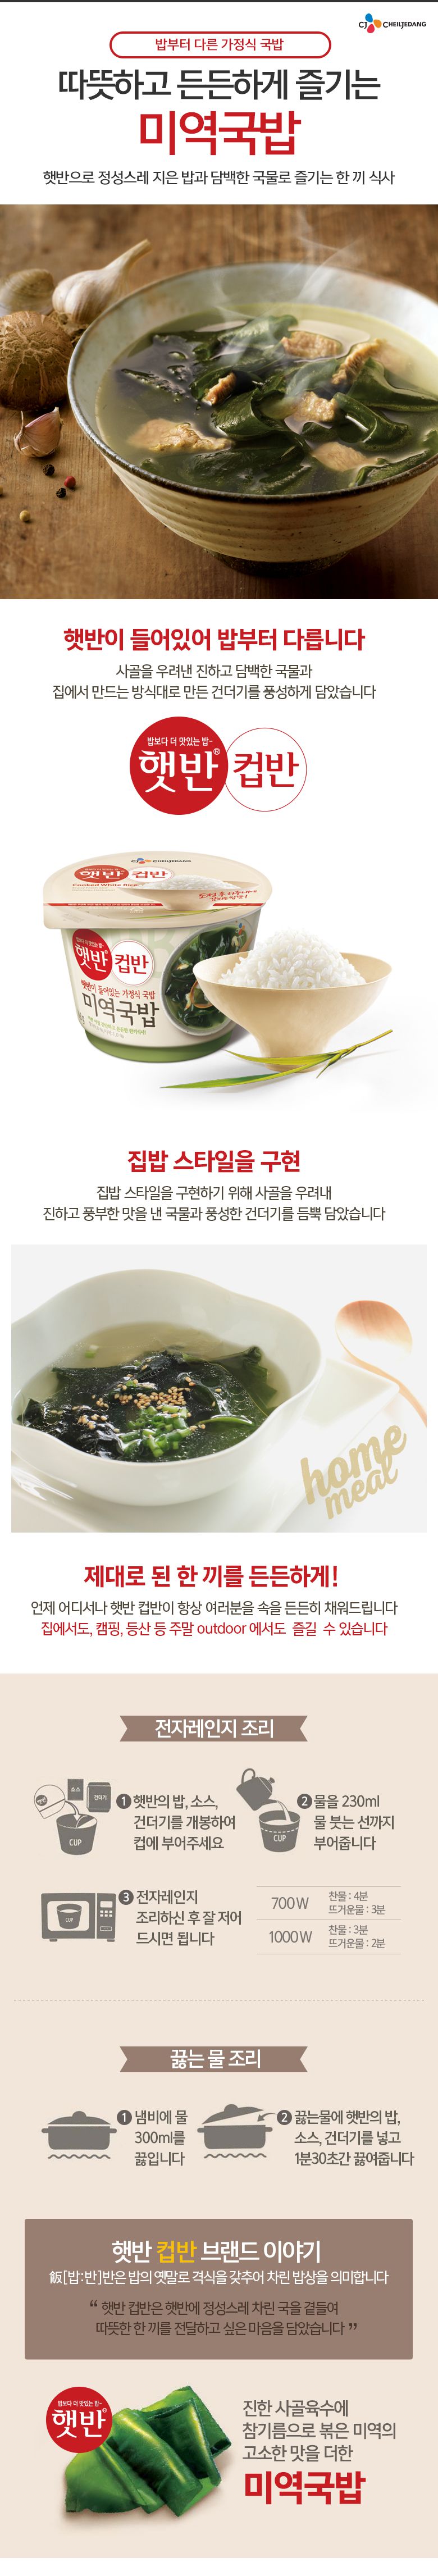 韓國食品-[CJ] 杯飯[海帶湯] 167g